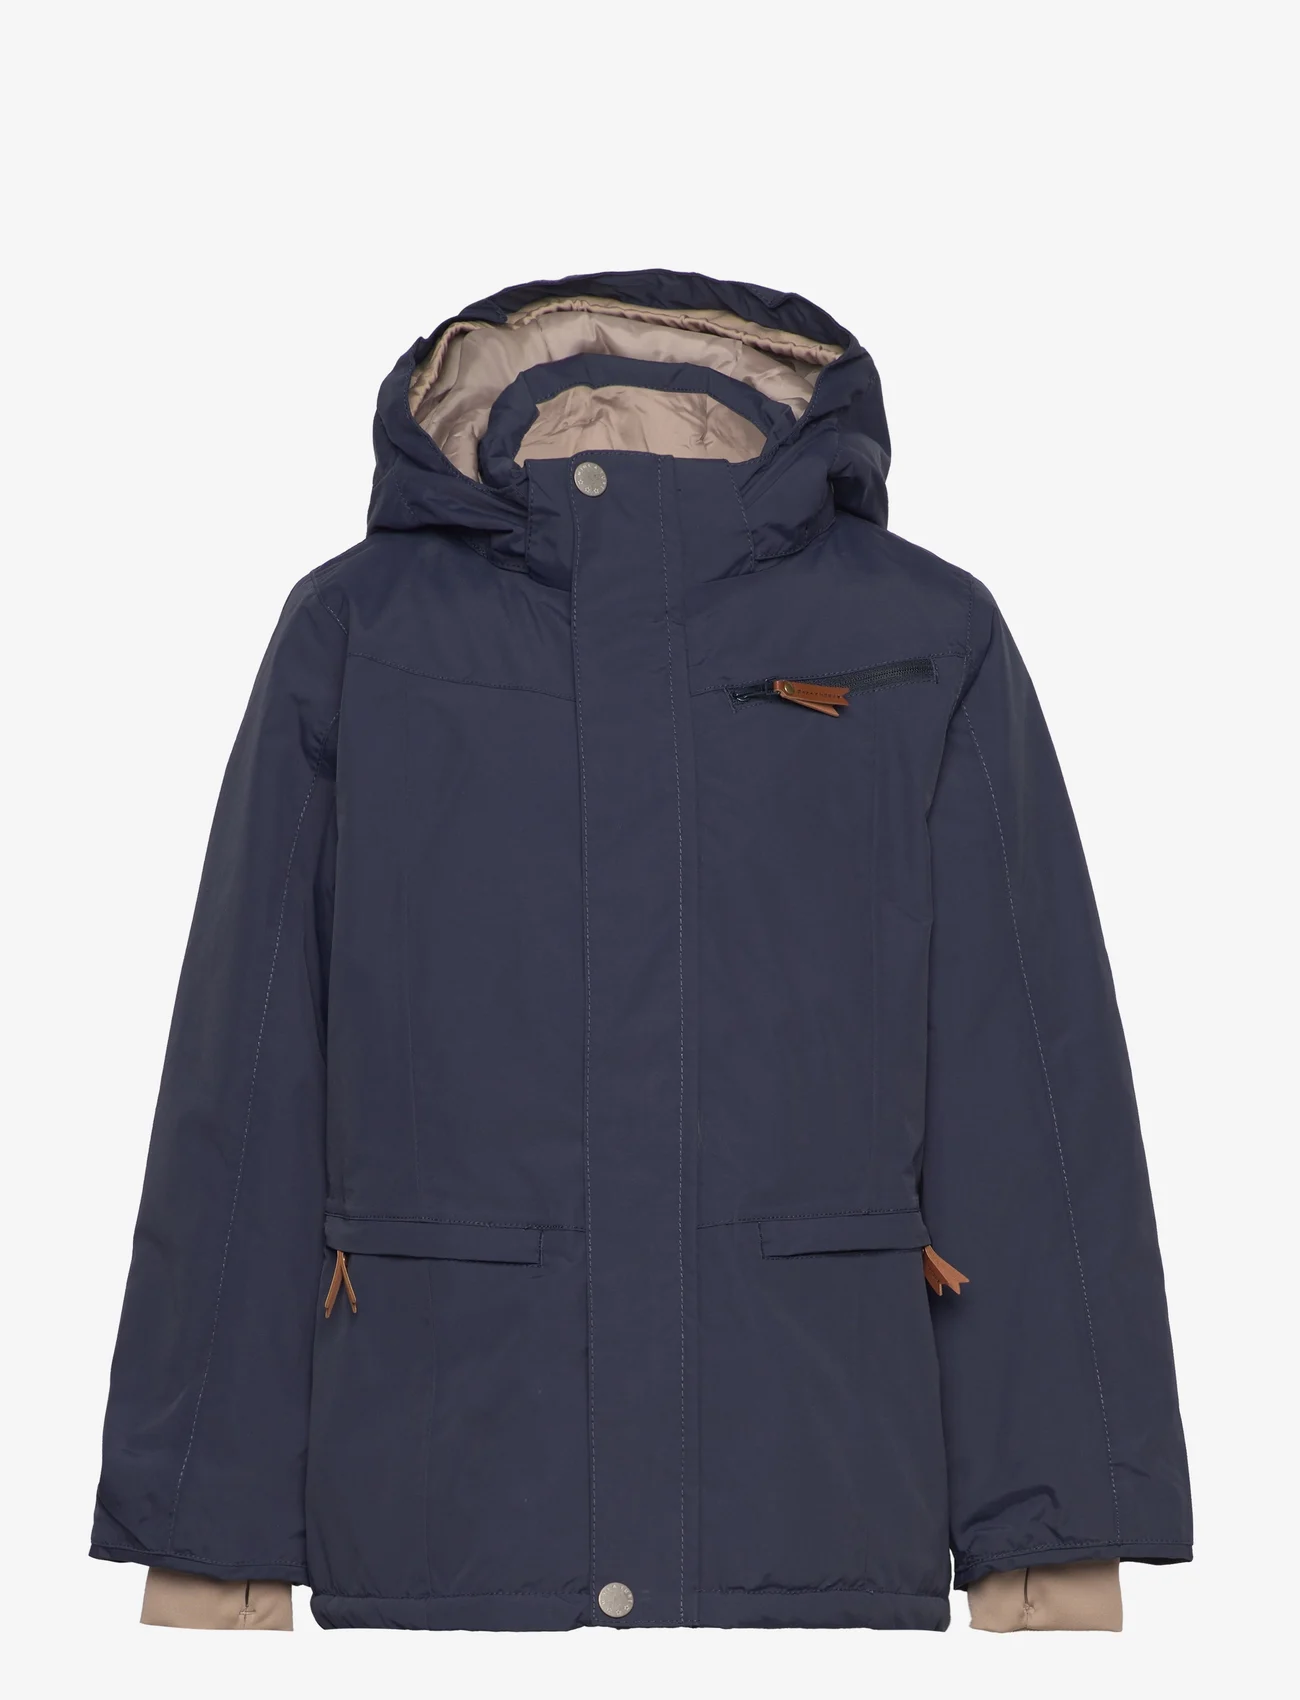 Mini A Ture - Vestyn winter jacket. GRS - winterjacken - blue nights - 0